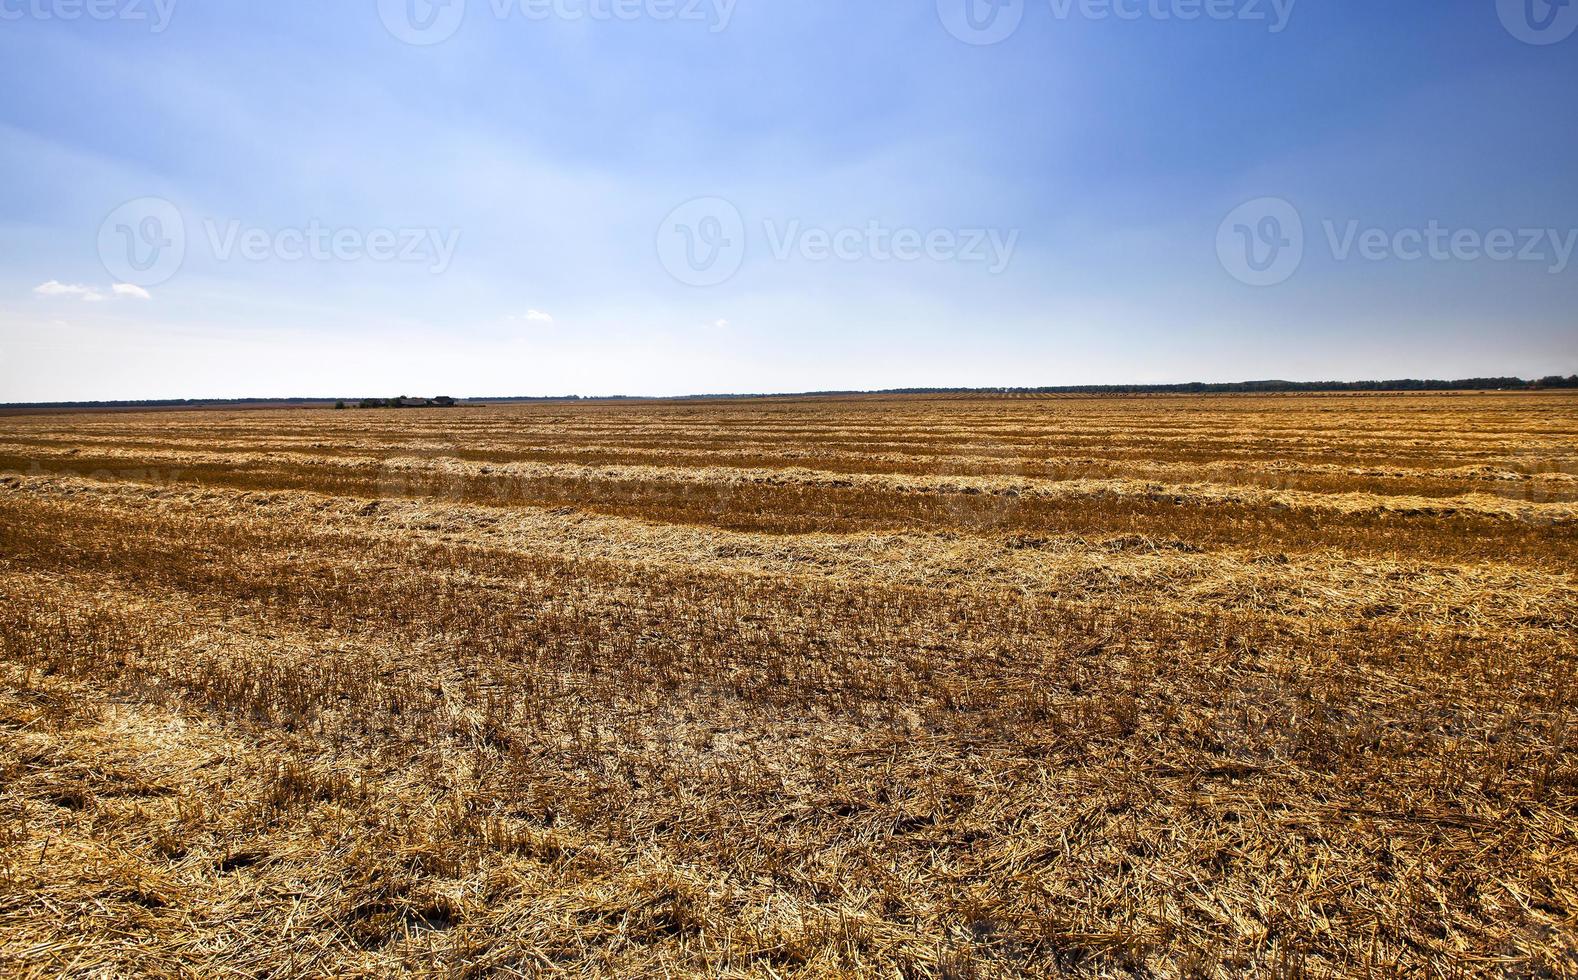 cosechar cereales - un campo agrícola en el que se recoge la cosecha de cereales foto